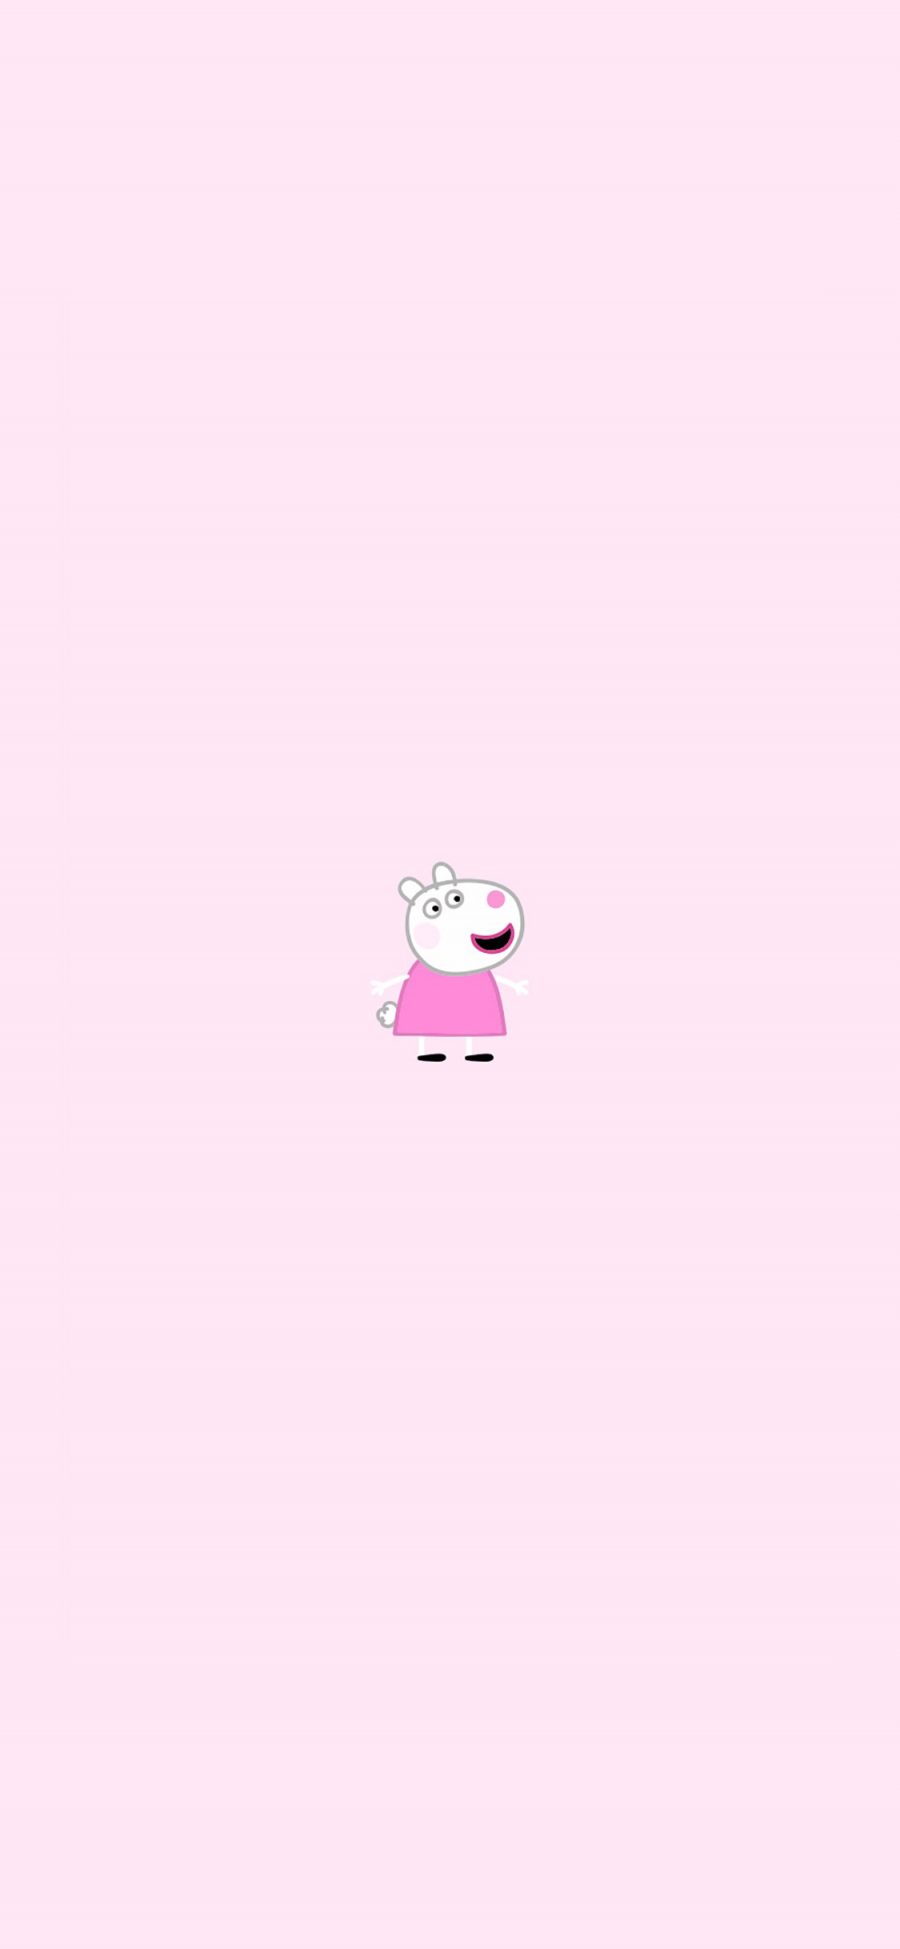 [2436×1125]苏西 小猪佩奇 可爱 粉色 动画 苹果手机动漫壁纸图片